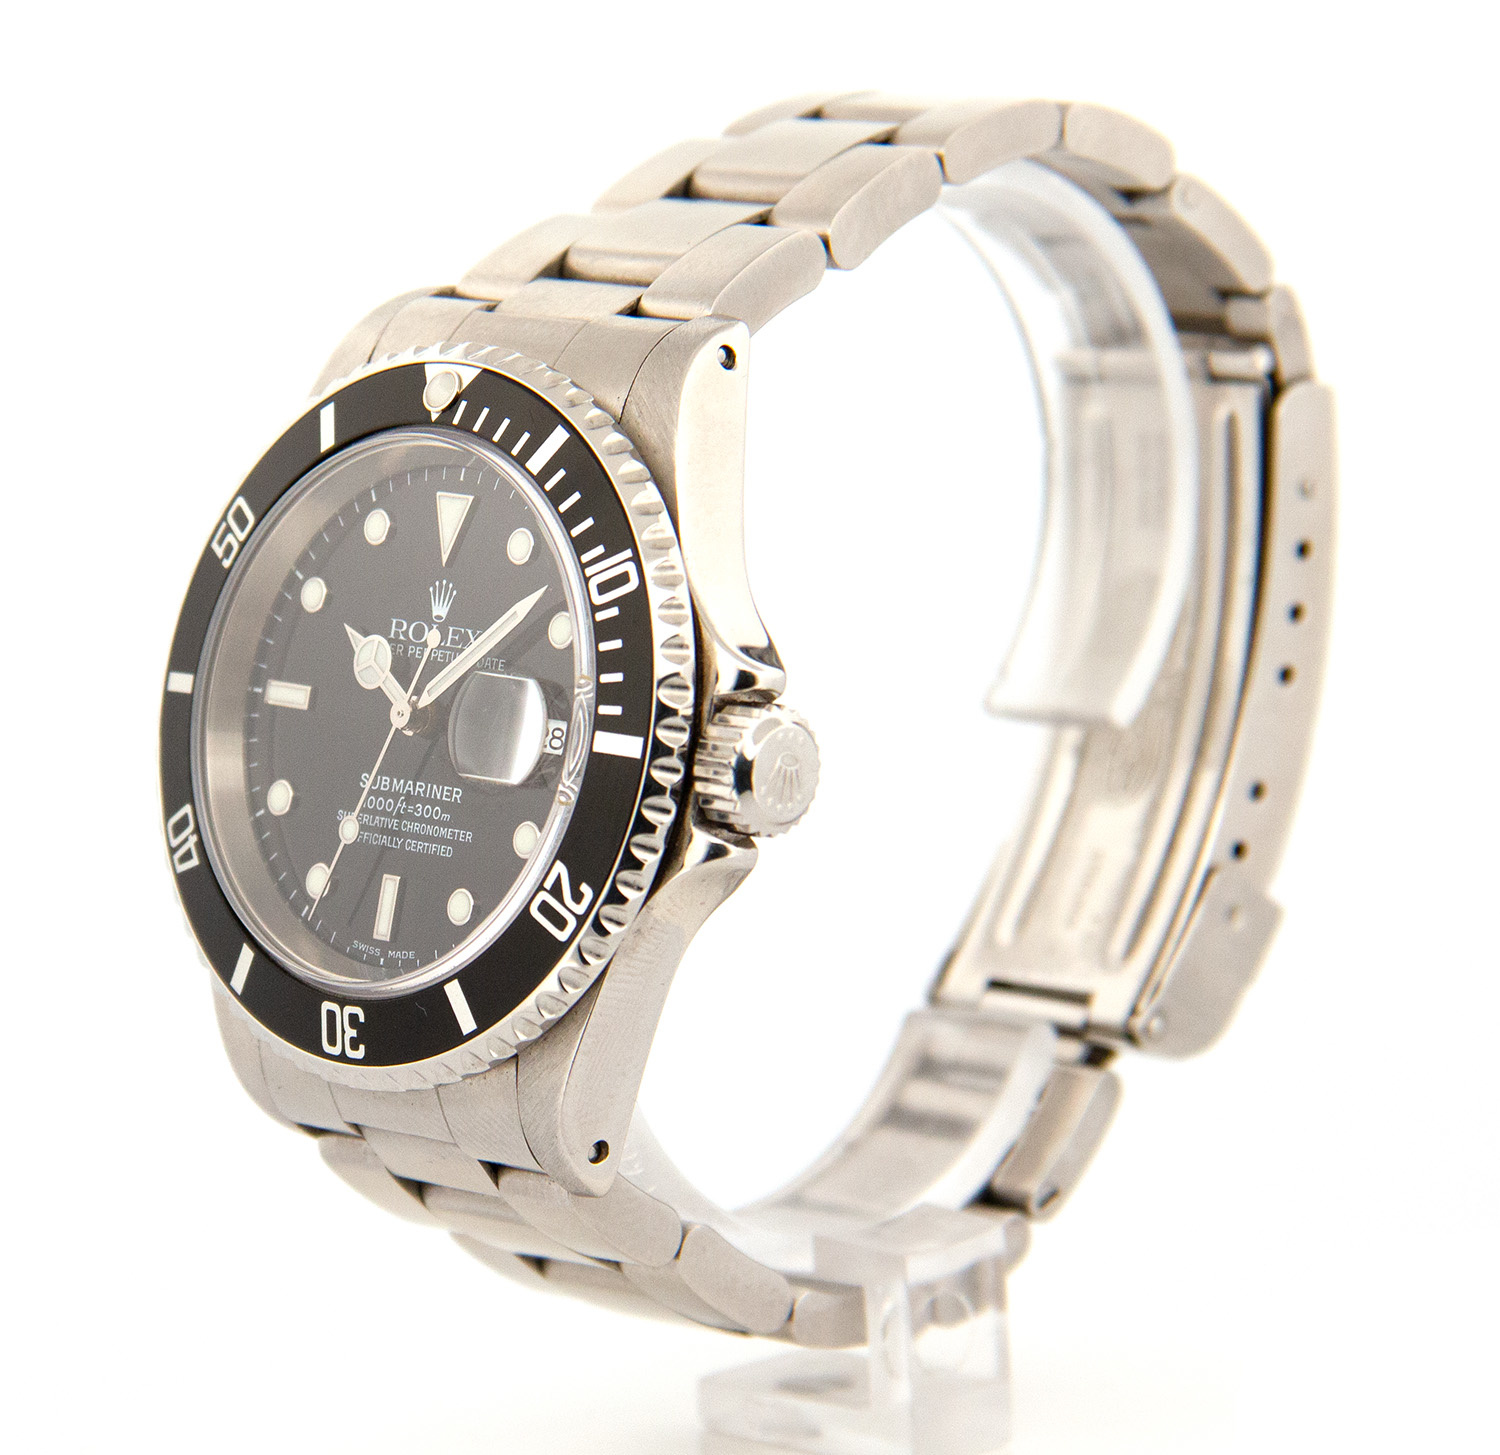 SOLD - Rolex Submariner Date - Horloge - 16610-3